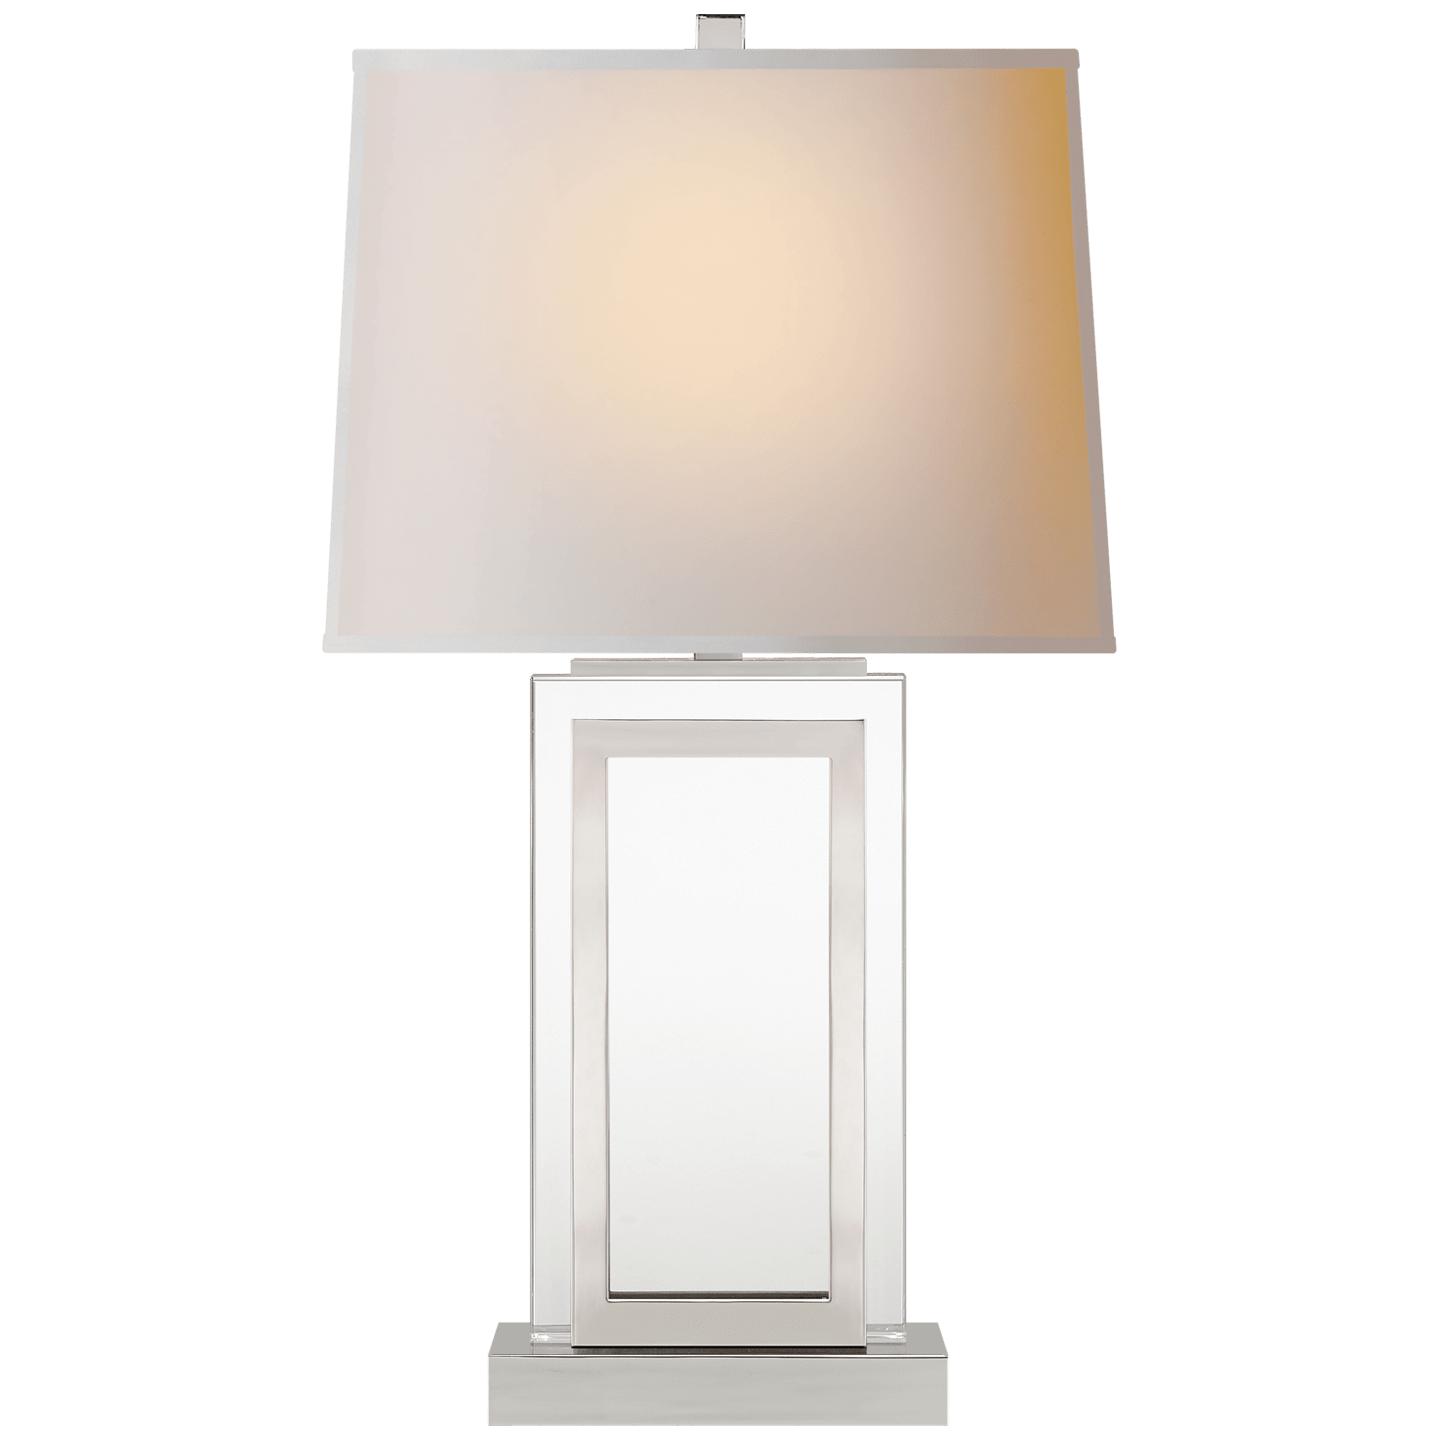 Купить Настольная лампа Crystal Panel Table Lamp в интернет-магазине roooms.ru